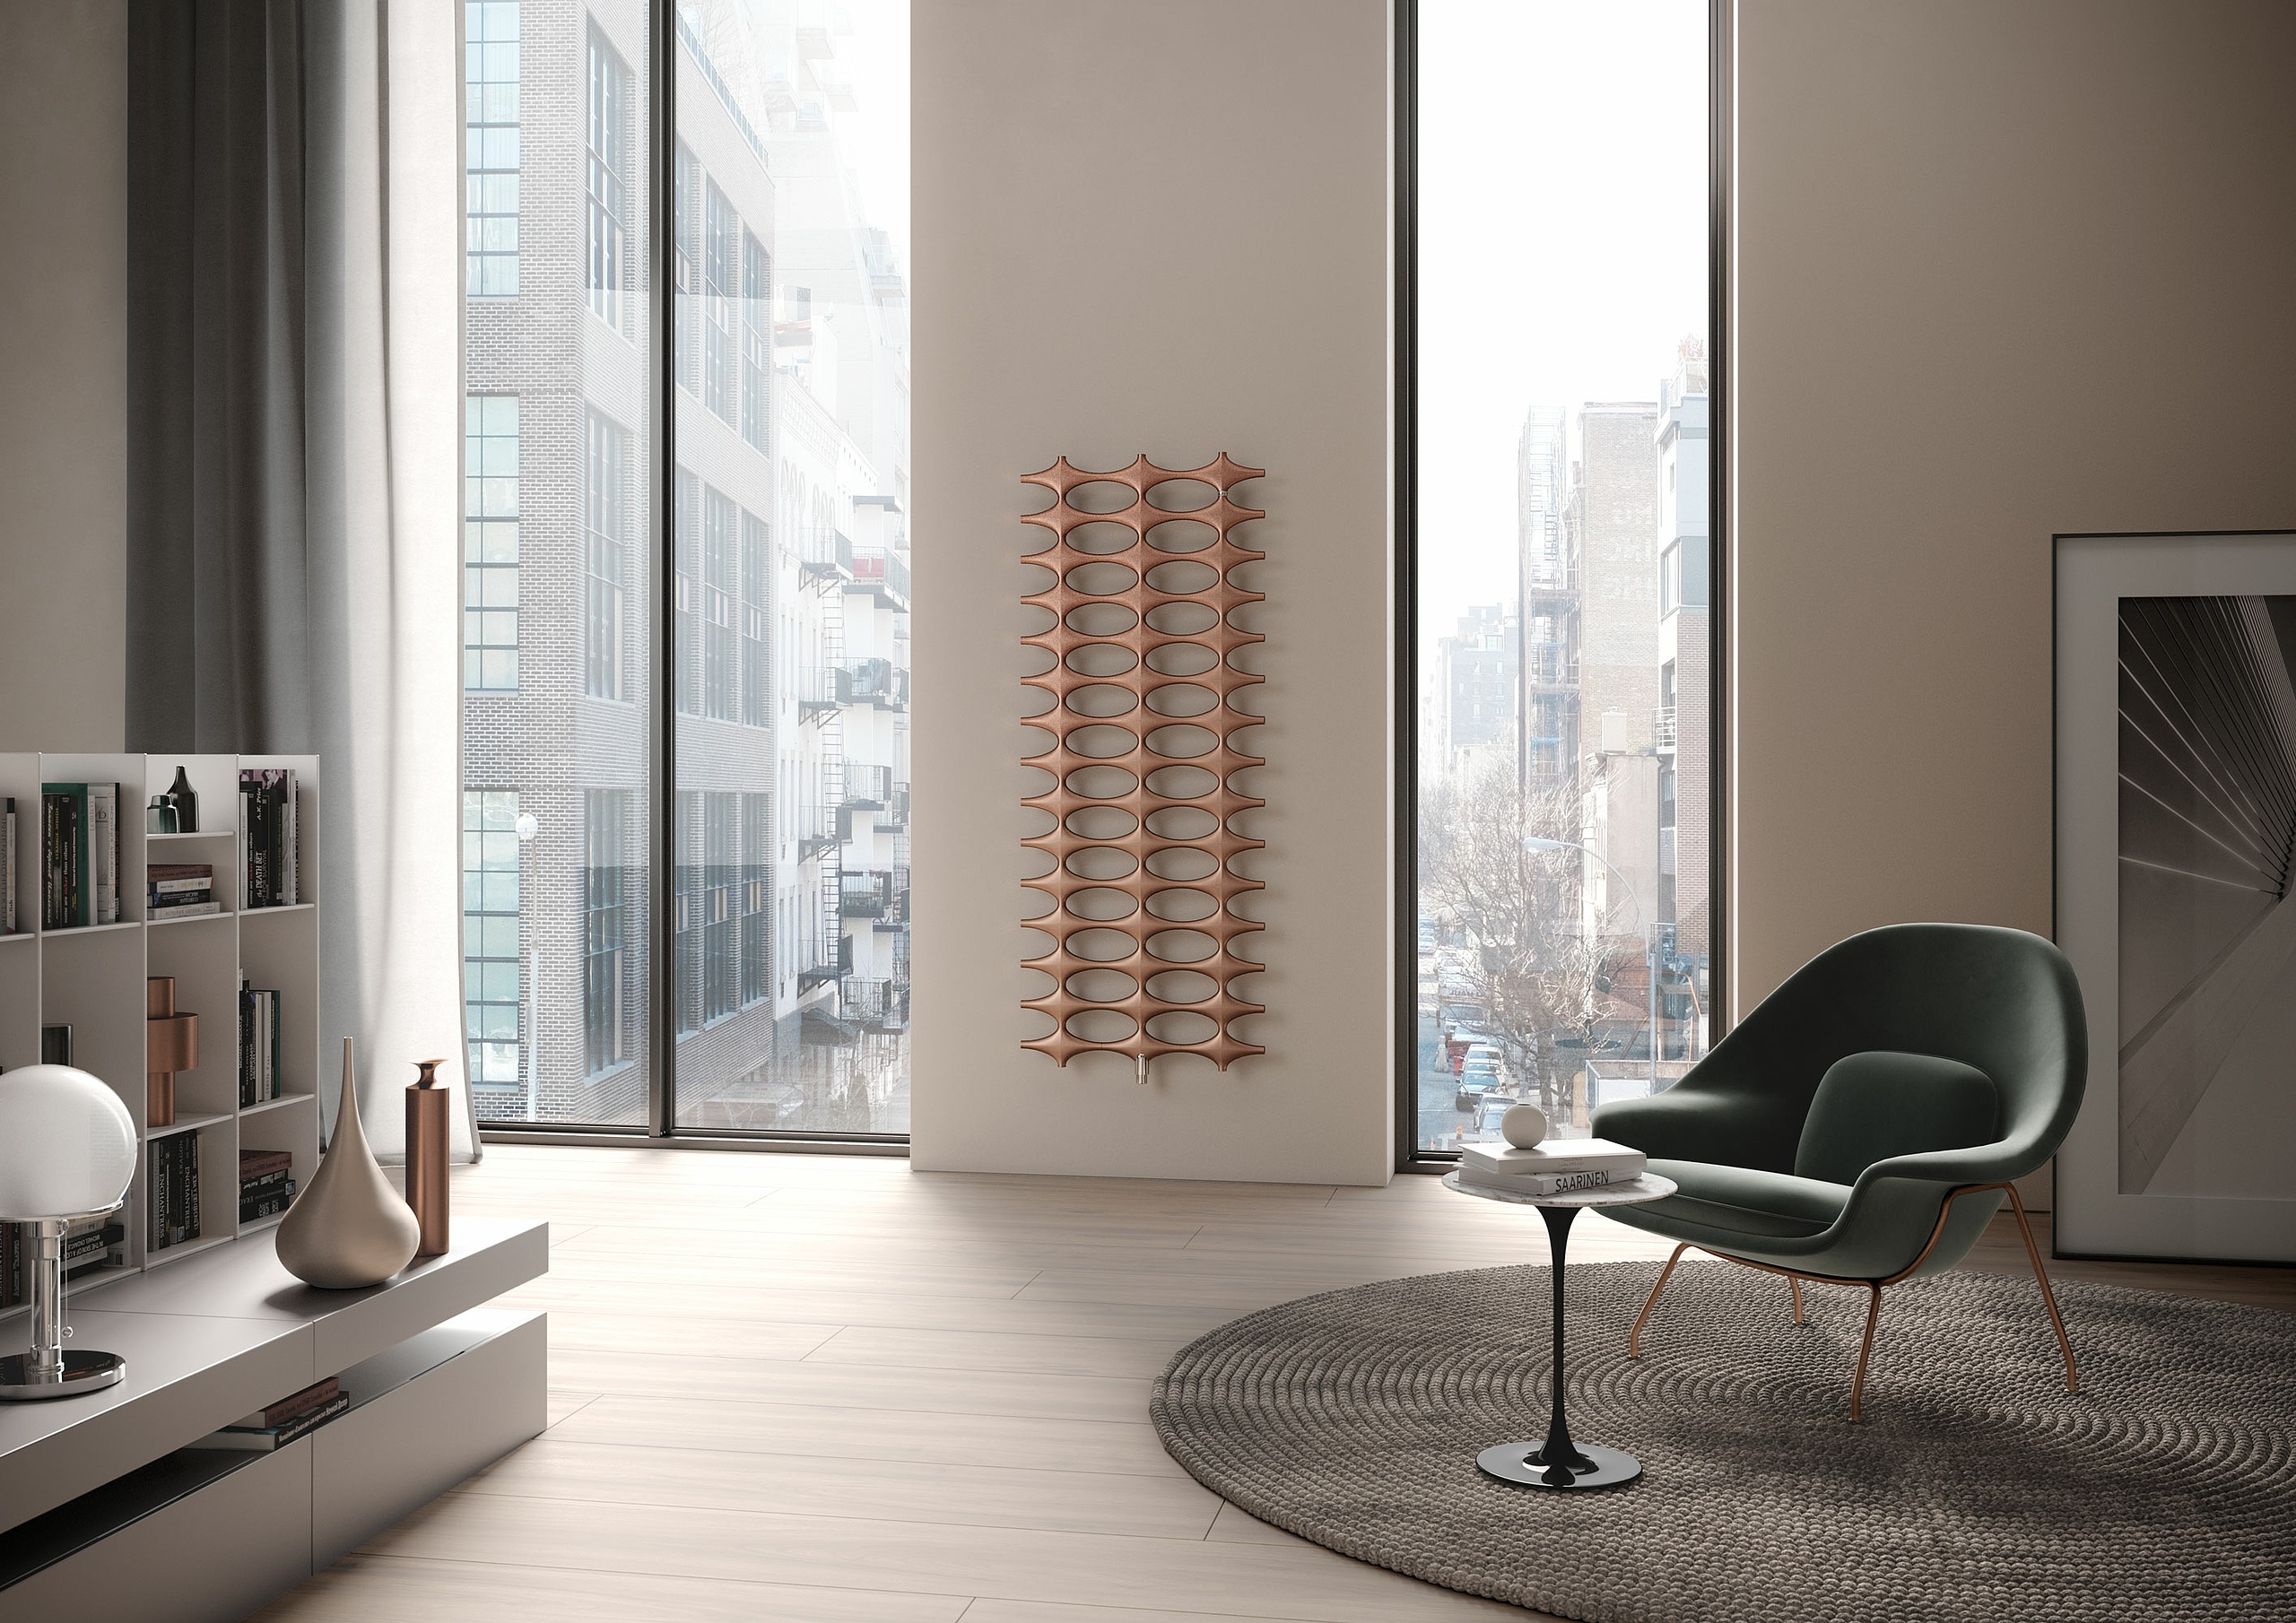 Kermi Ideos – Speciali radiatori di design dal fascino inconfondibile.